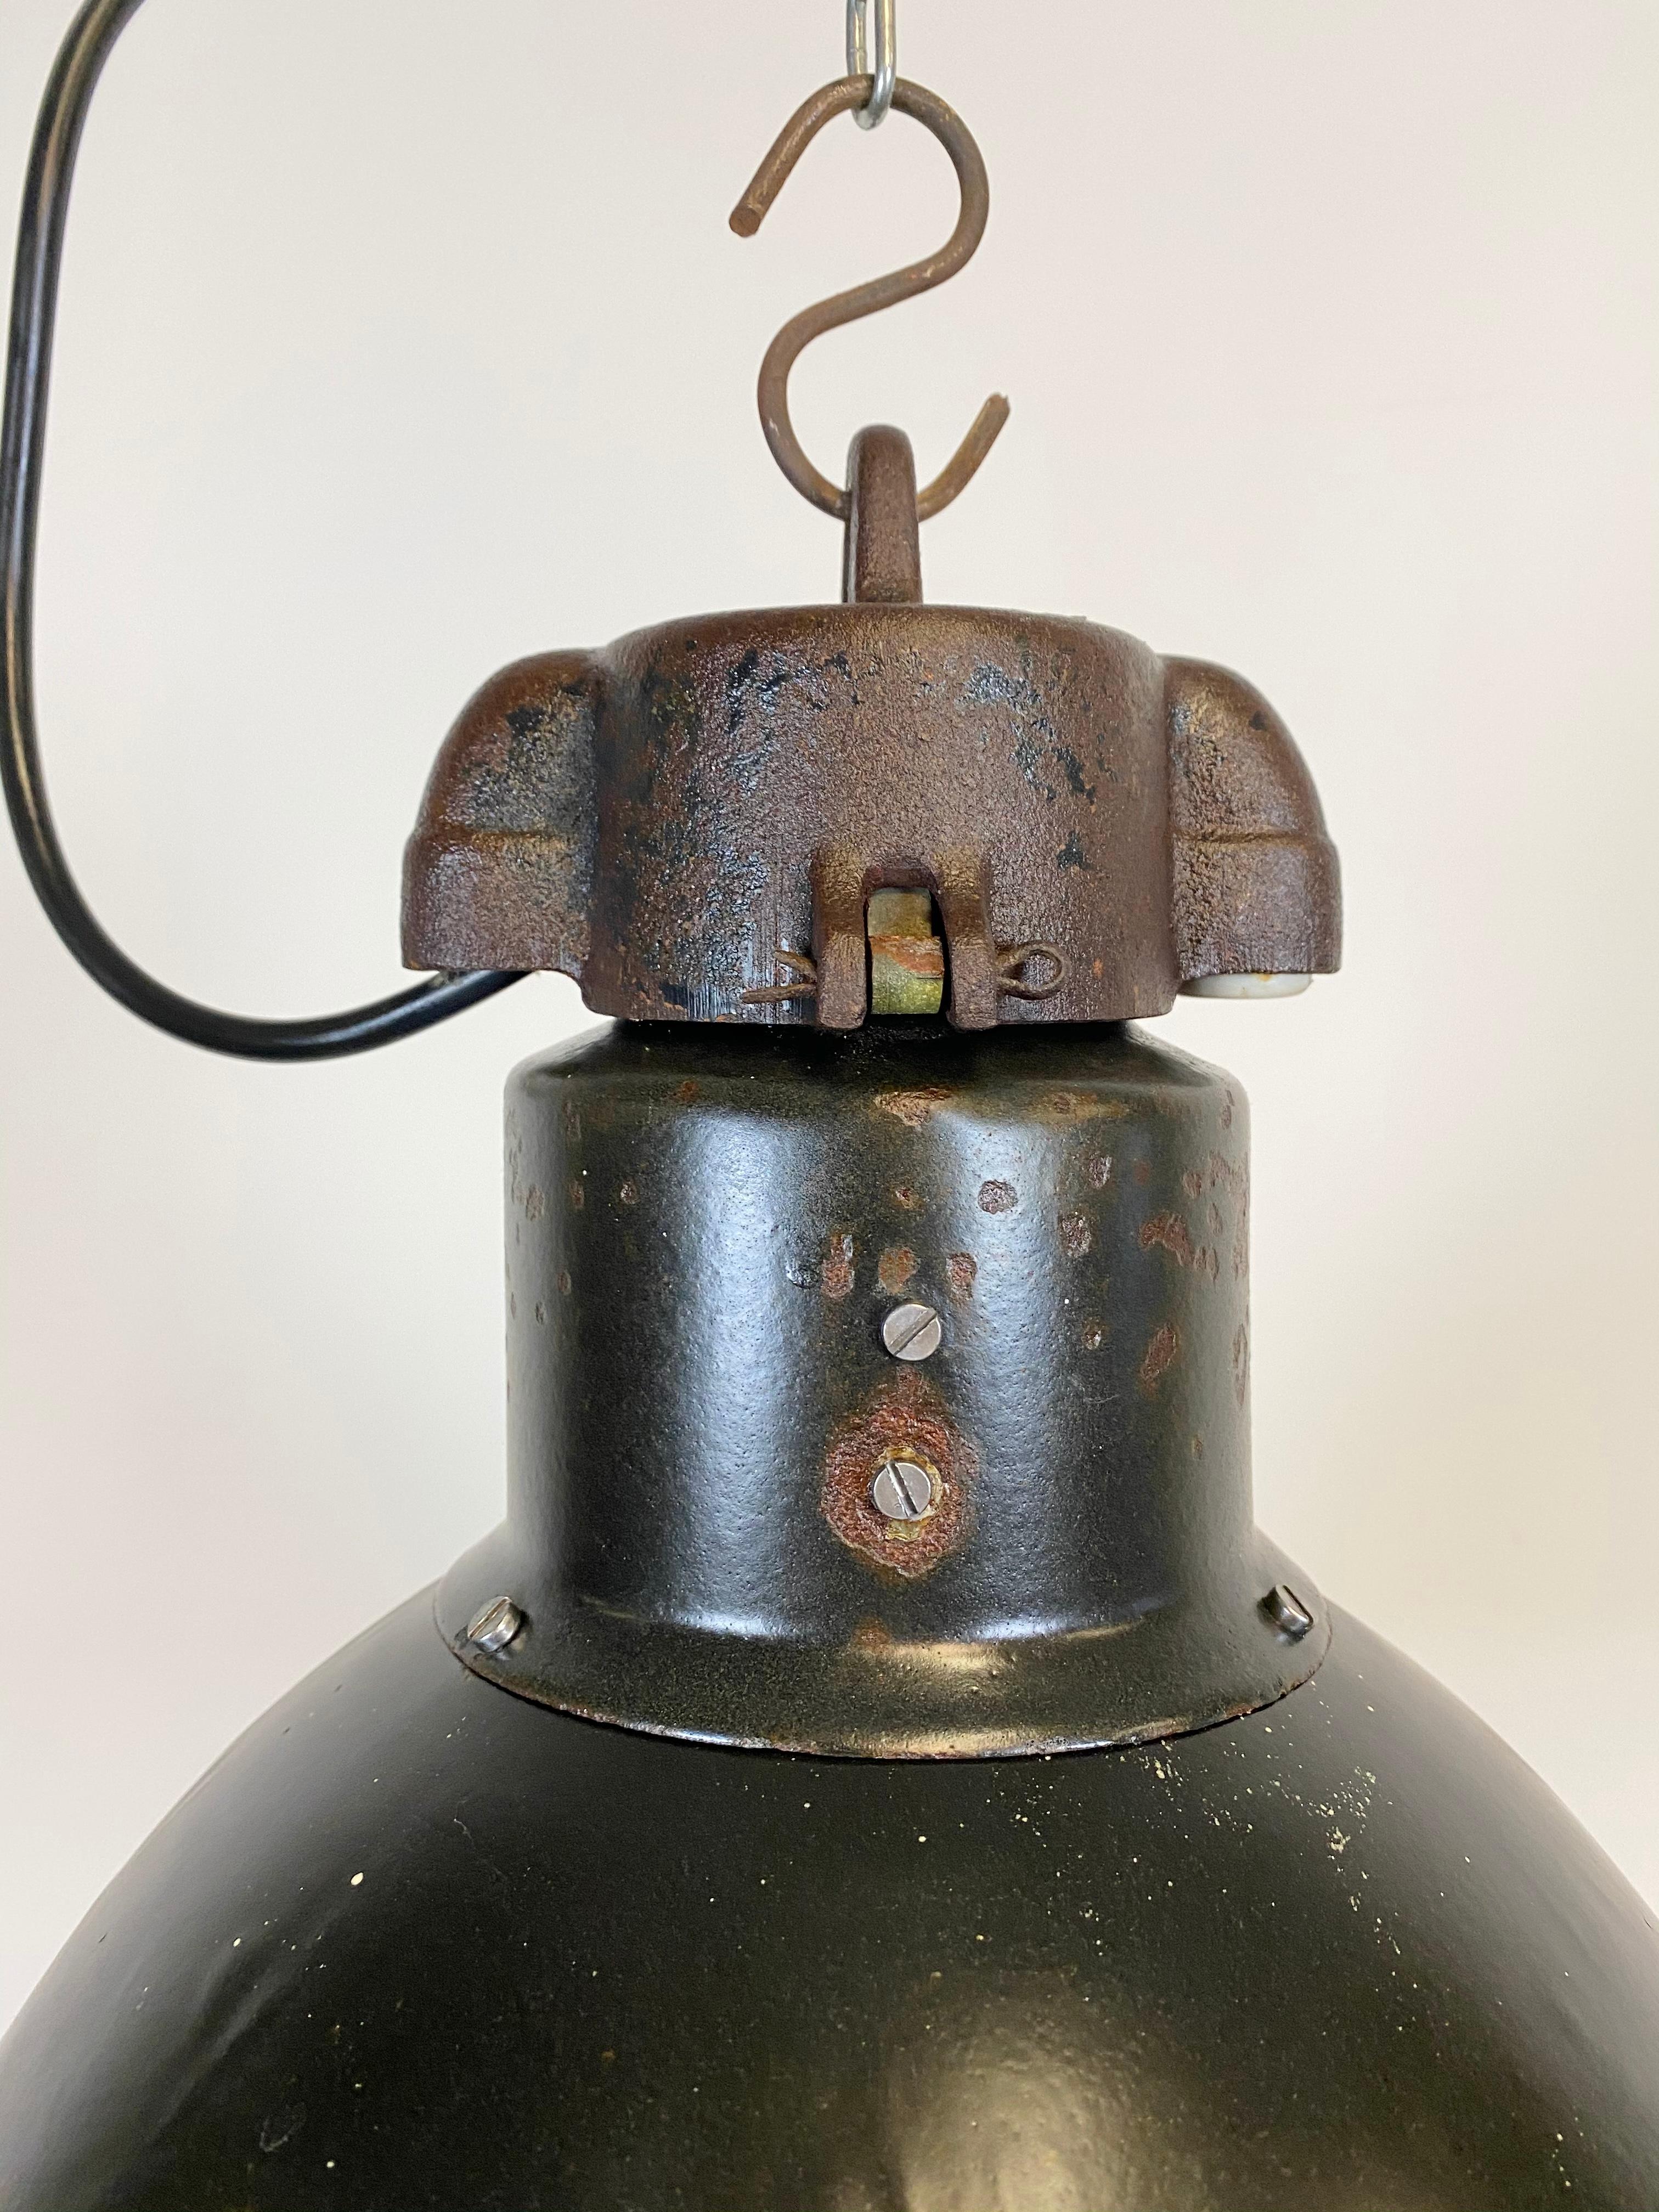 - Vieille lampe pendante industrielle en émail noir
- Conçu à l'époque du Bauhaus, dans les années 1930 
- Émail blanc à l'intérieur de la teinte 
- Plateau en fonte 
- Nouvelle douille en porcelaine pour les ampoules E 27 et fil électrique
-